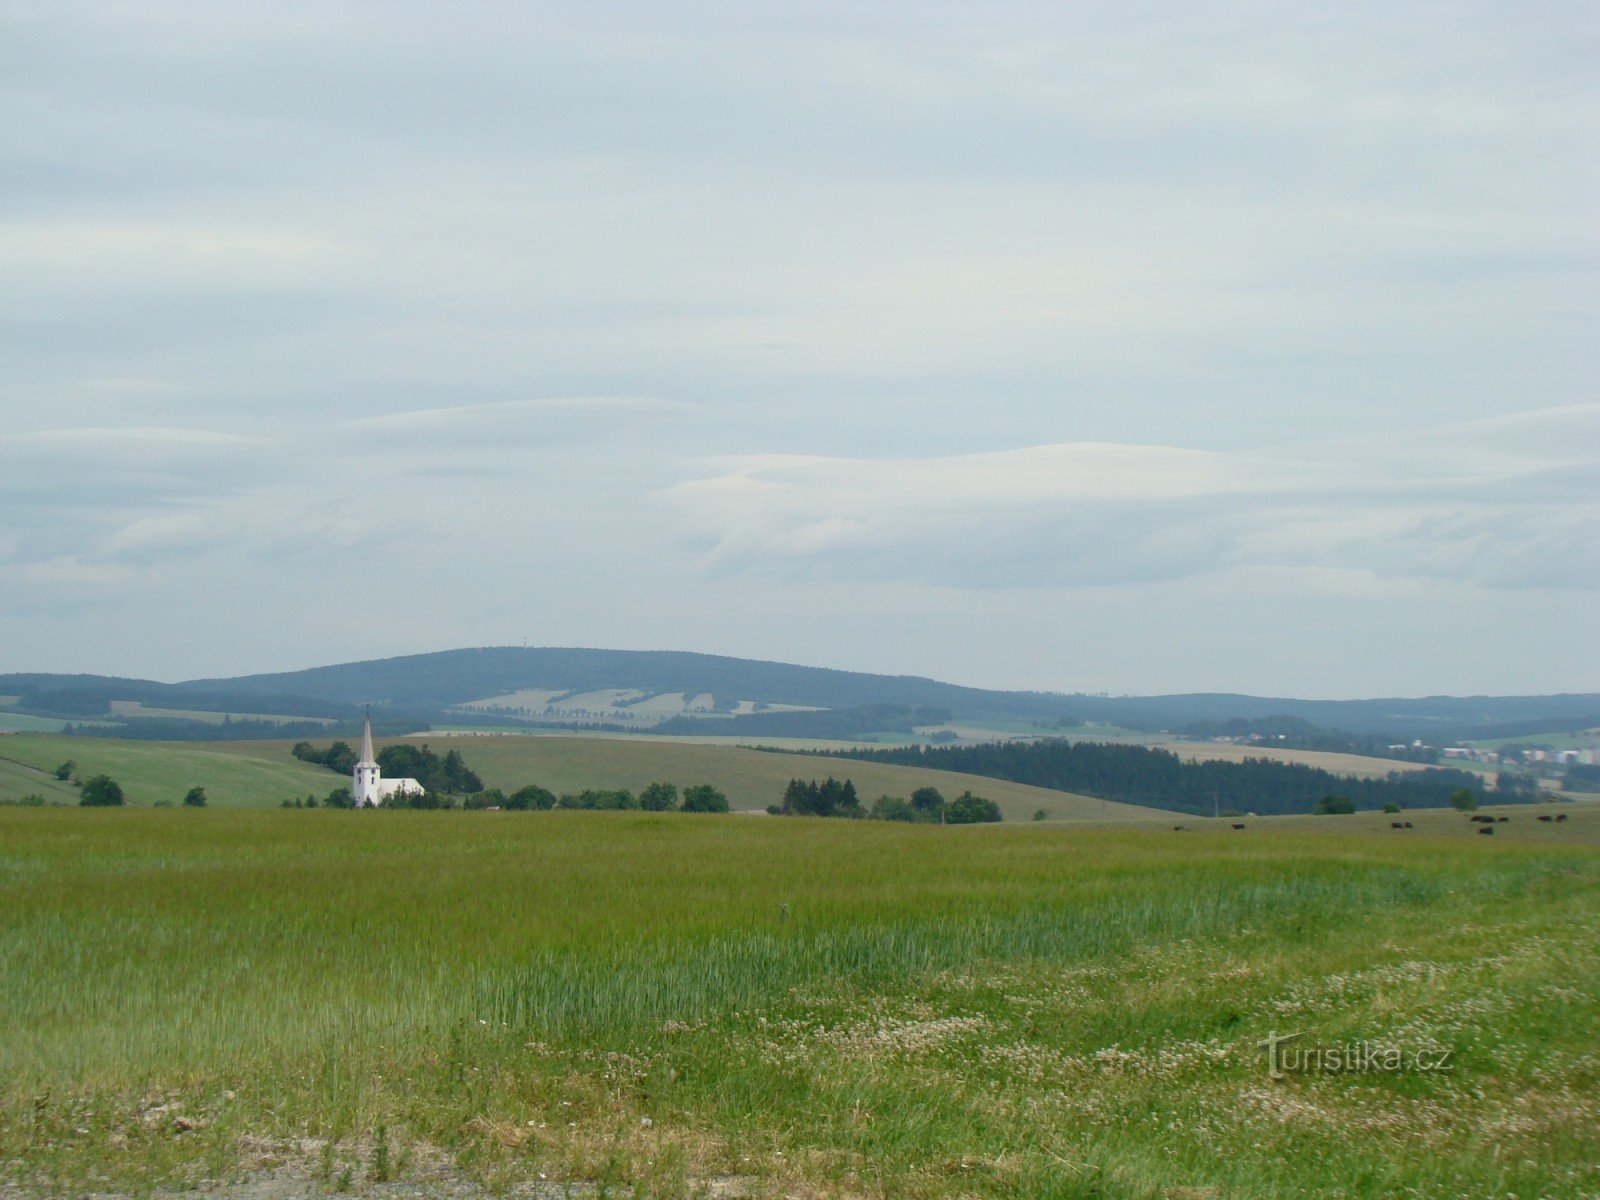 Vista desde la cima de Hraničné Petrovice, Moravský Beroun a la derecha